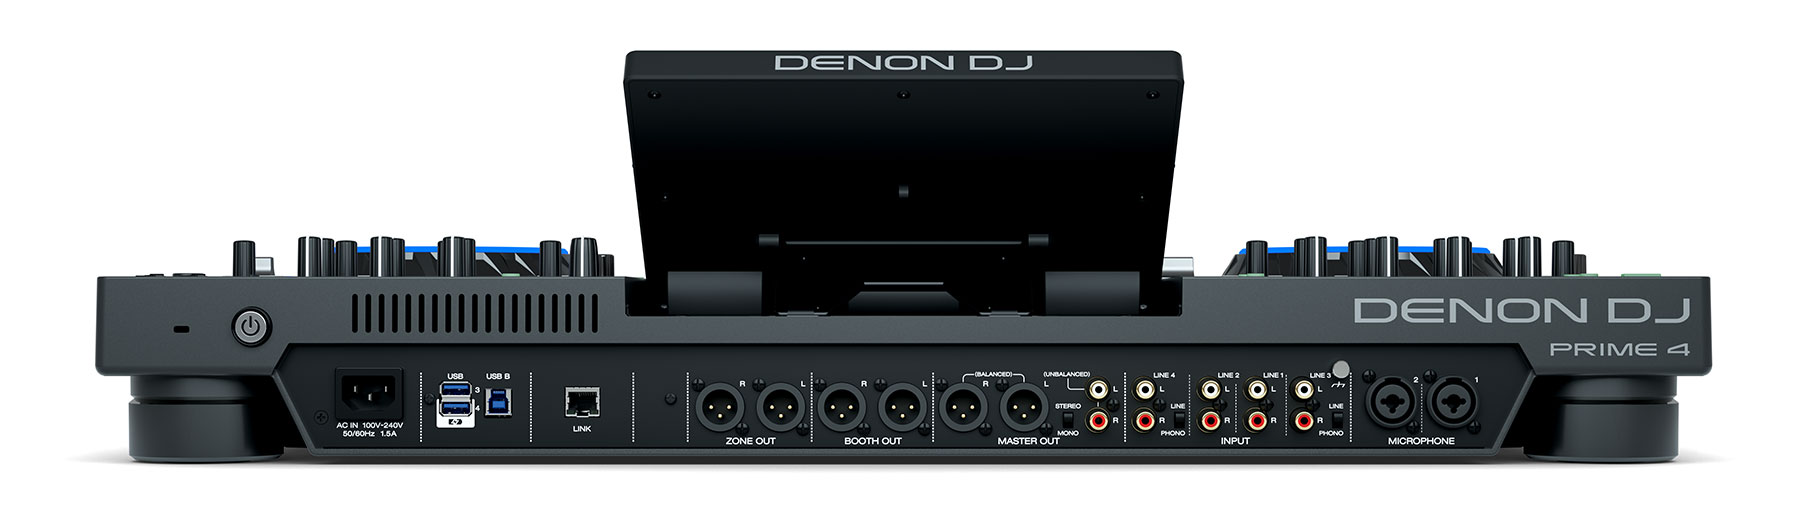 Denon DJ Prime 4 Zone Output